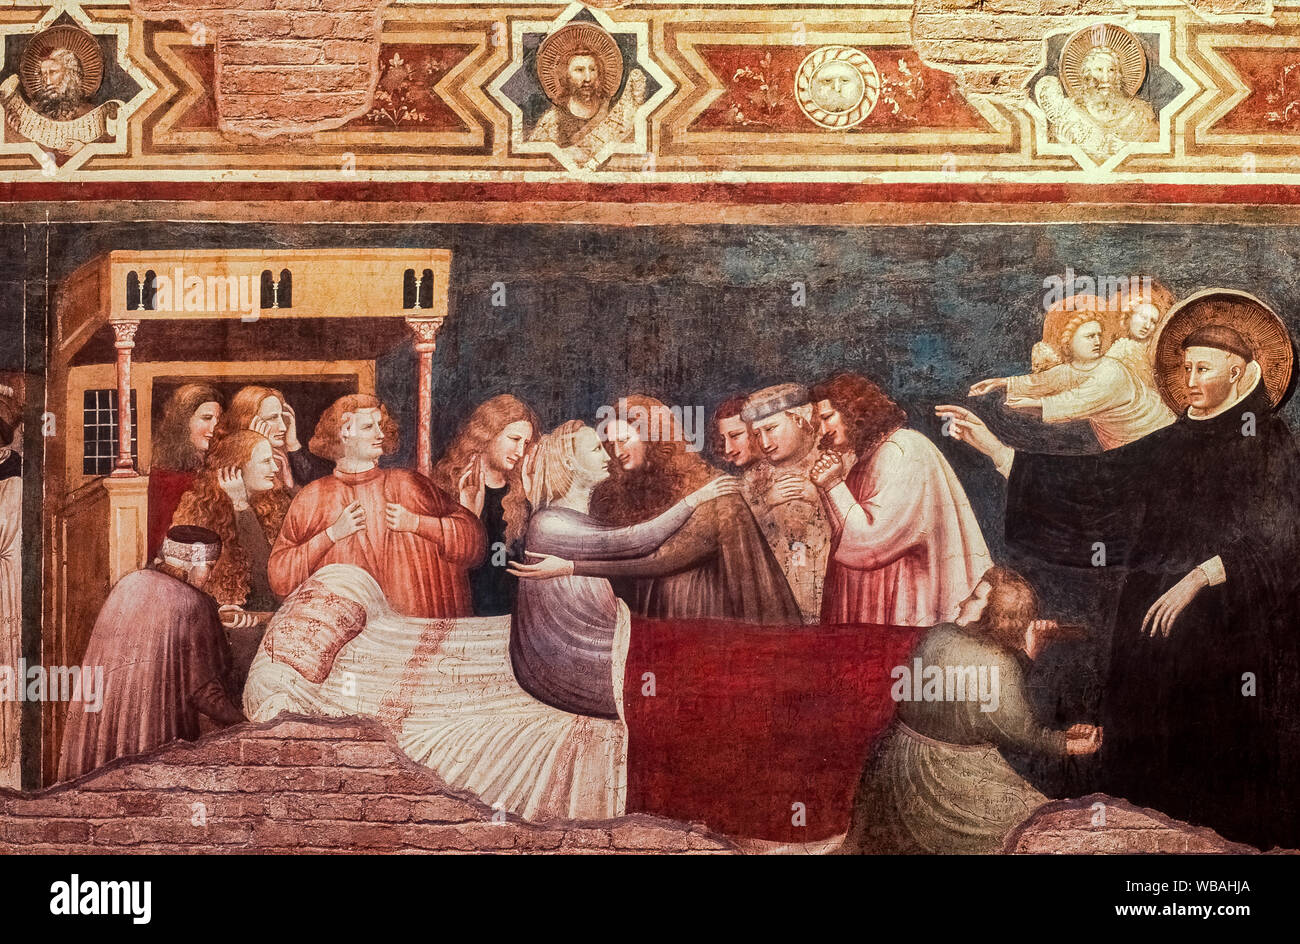 Italien Marken Tolentino Basilika San Nicola - Cappellone - Pietro e Giuliano da Rimini, Geschichten von S. Nicola - um 1320-25 gemalt - Auferstehung der jungen Frau von Fermo Stockfoto